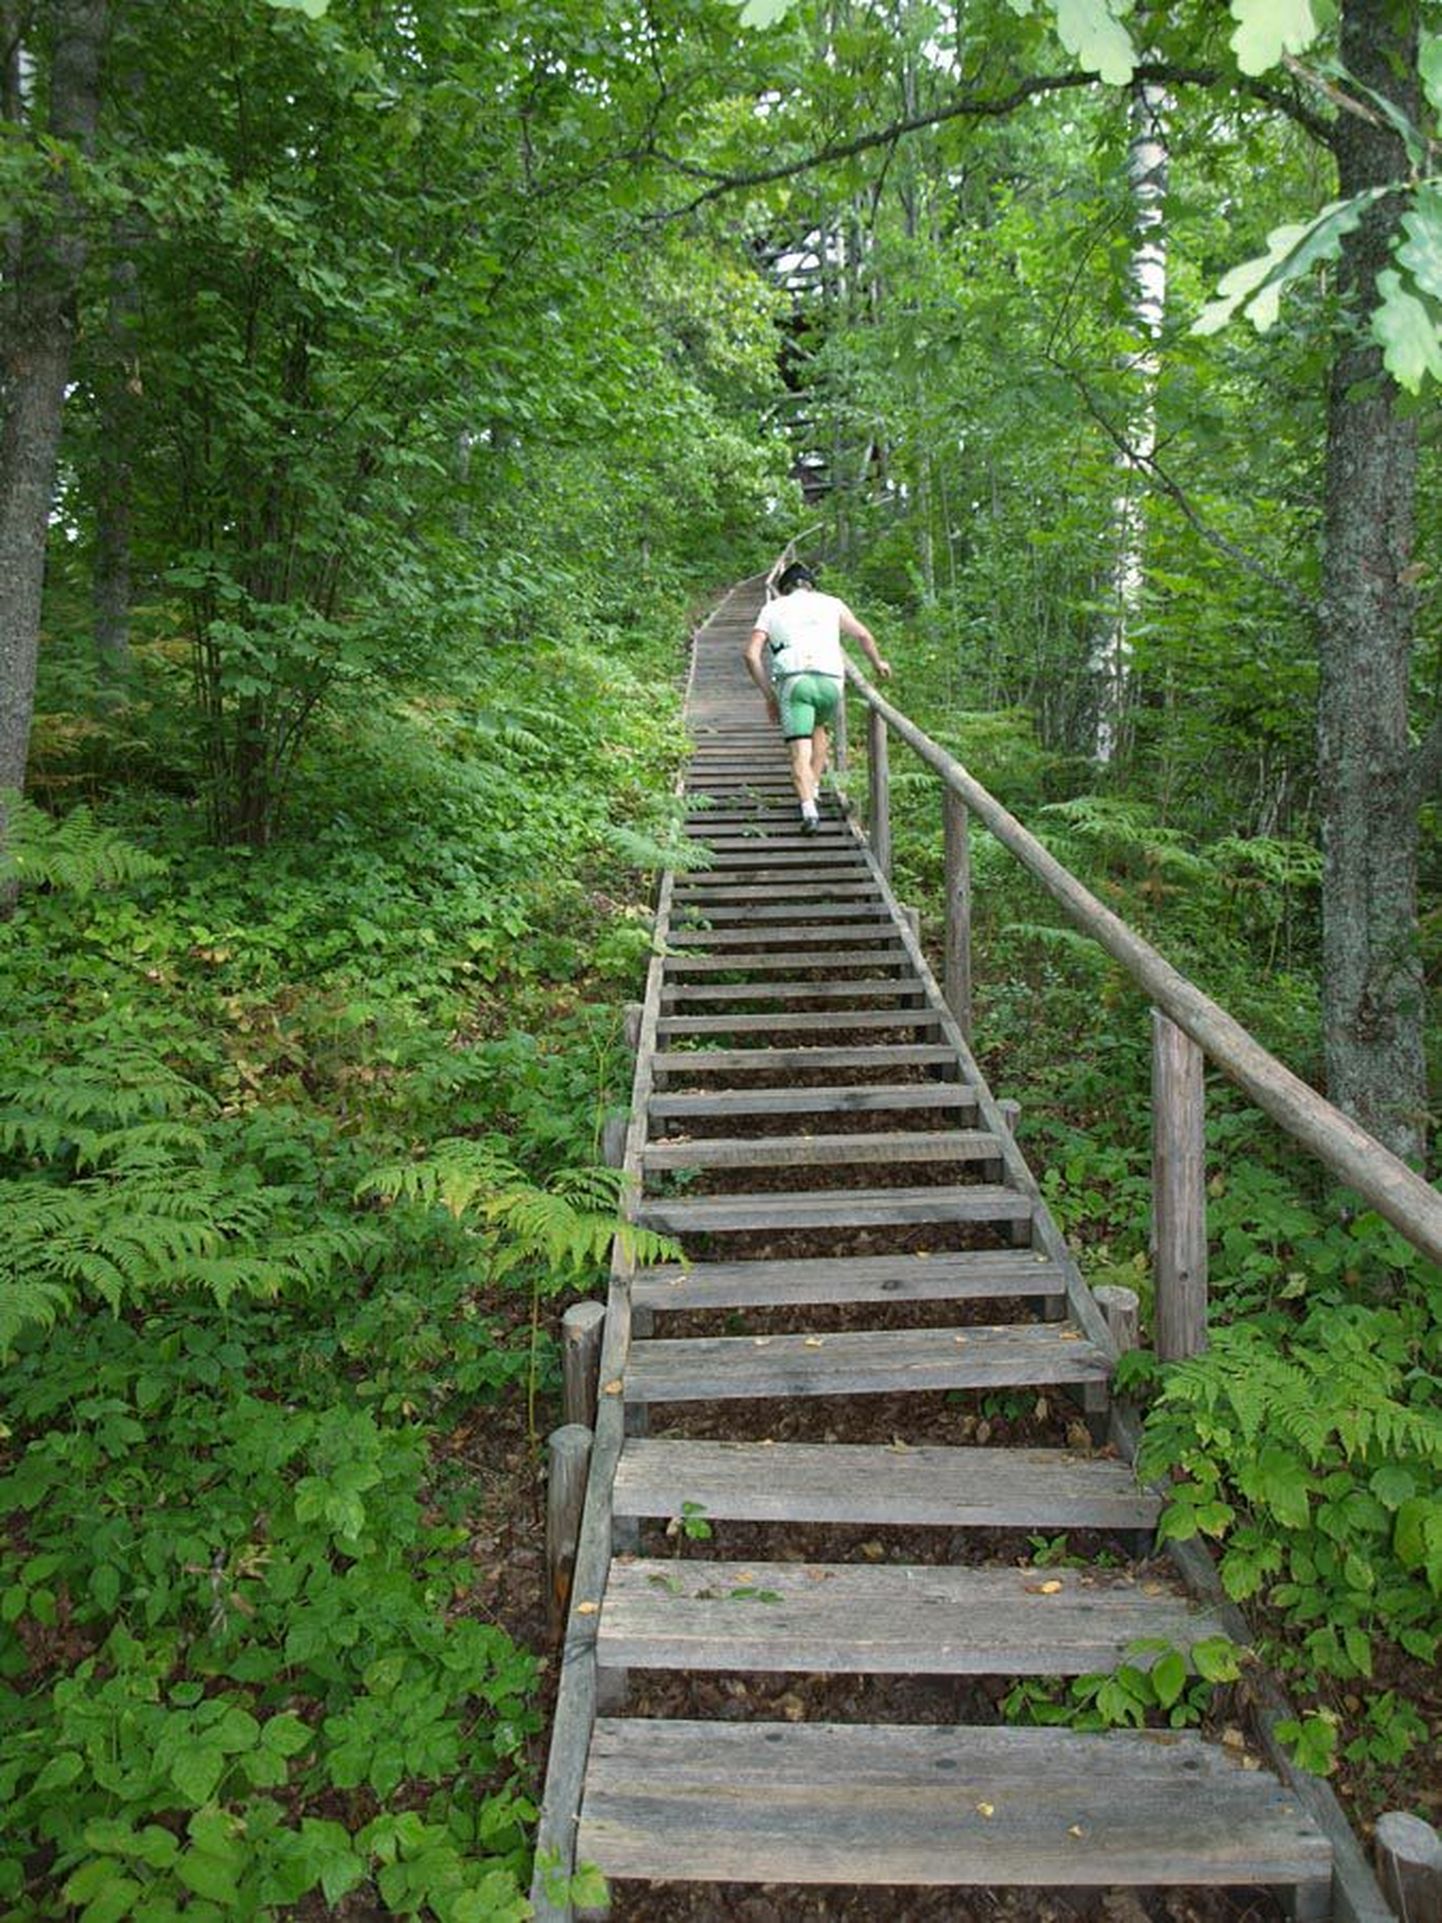 Trepist kõndimine annab hea koormuse, kaunis looduses lisaks ka esteetilise elamuse.